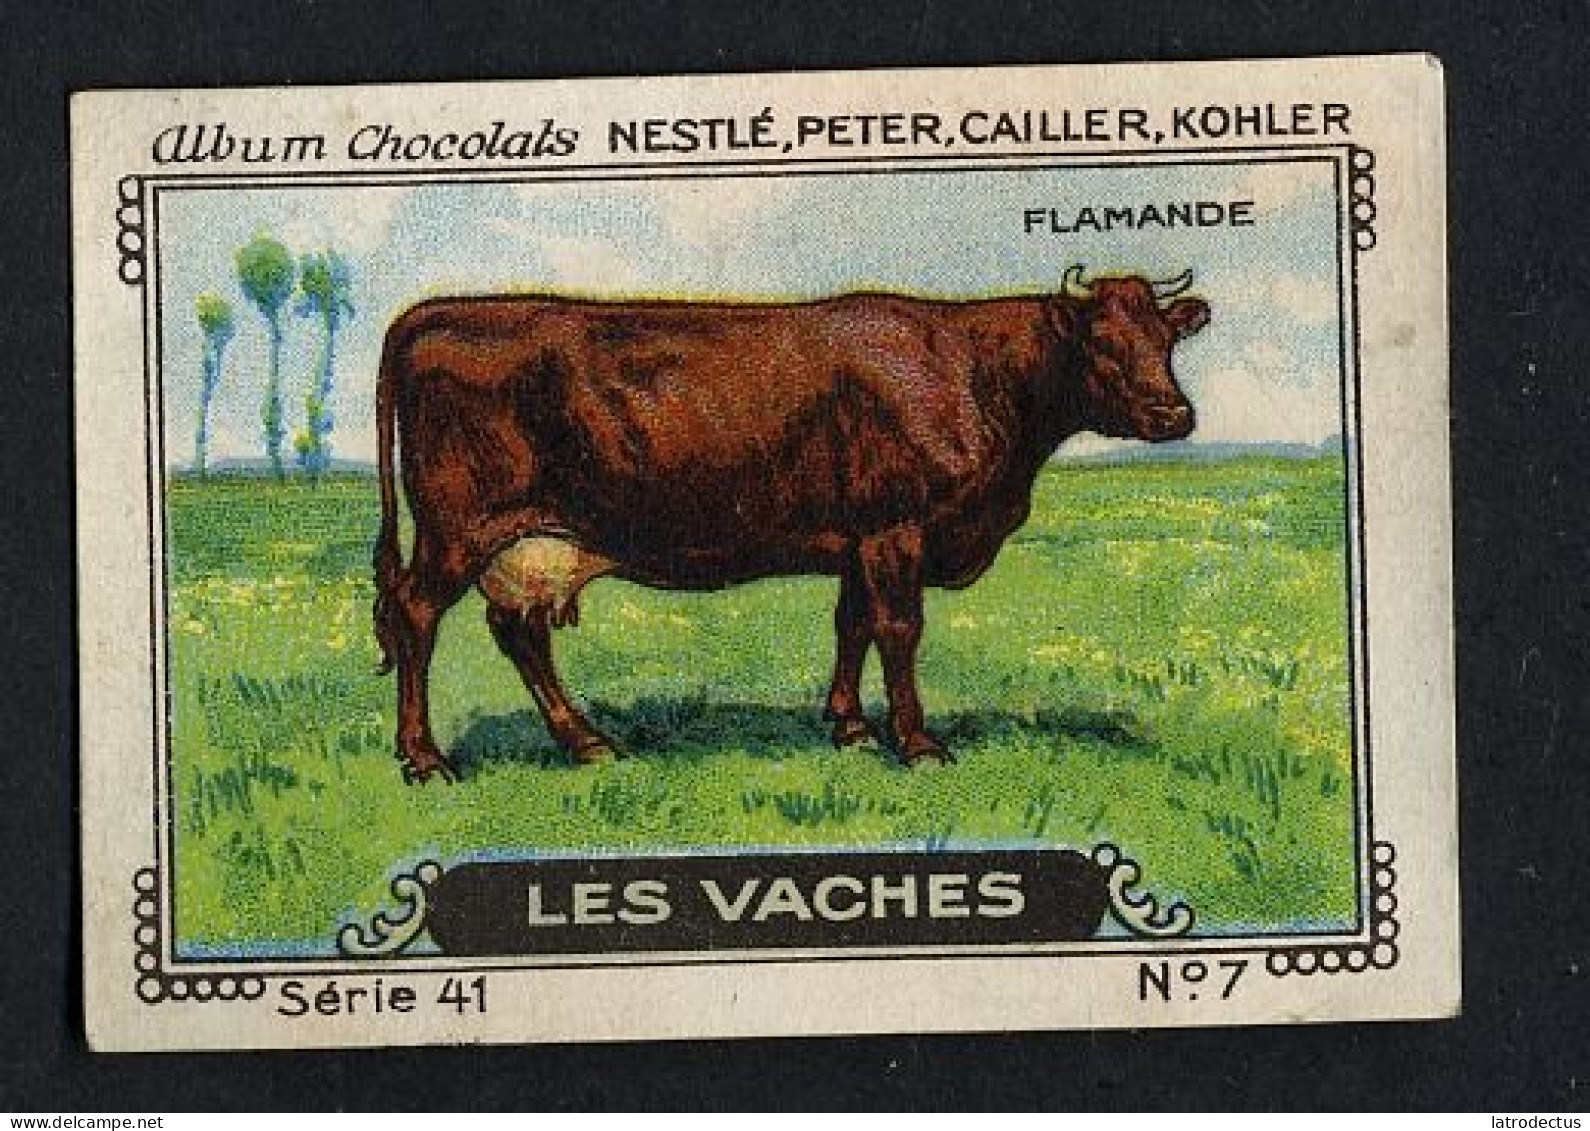 Nestlé - 41 - Les Vaches, Cows - 7 - Flamande - Nestlé